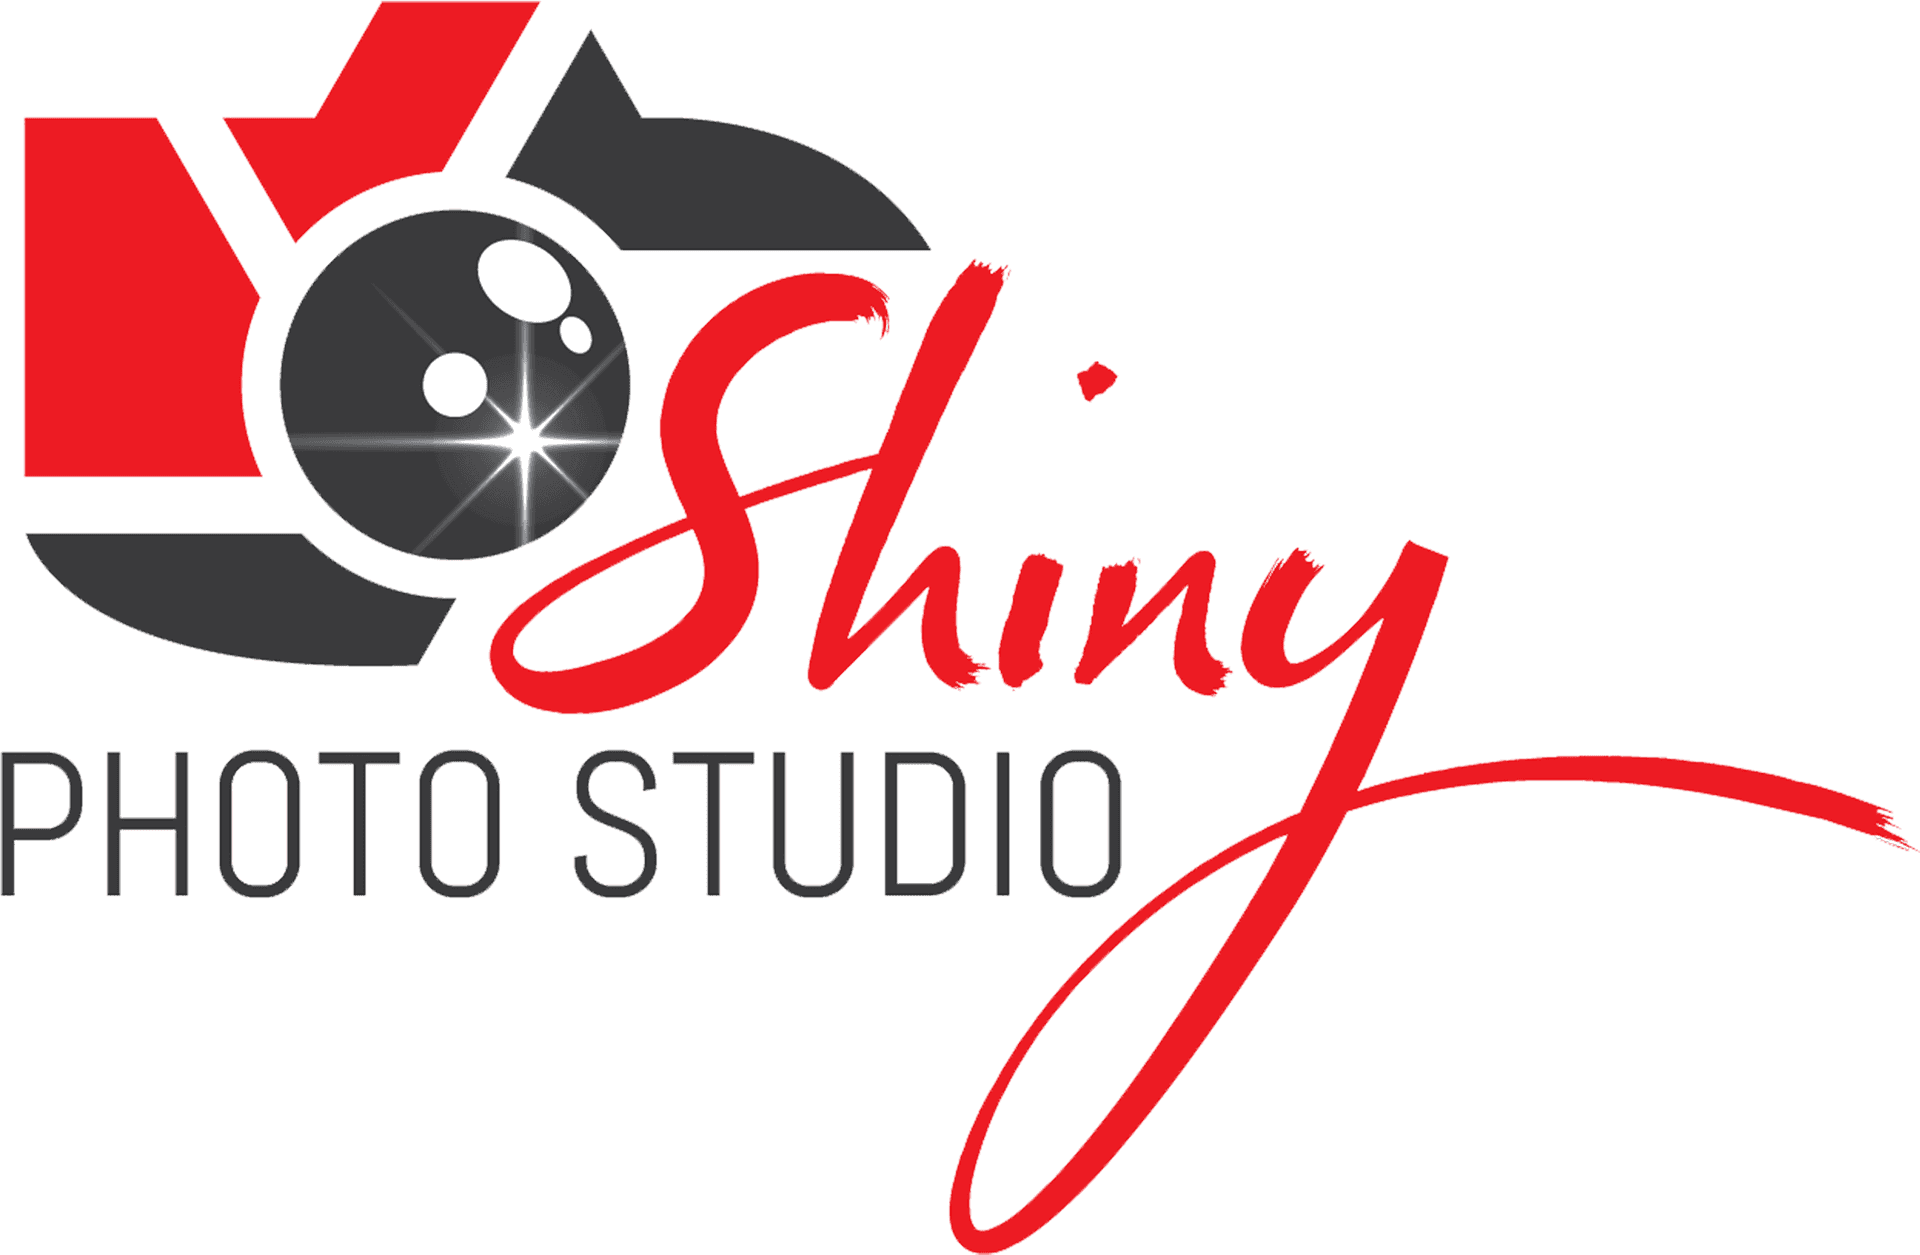 Shiny Photo Studio Logo PNG image